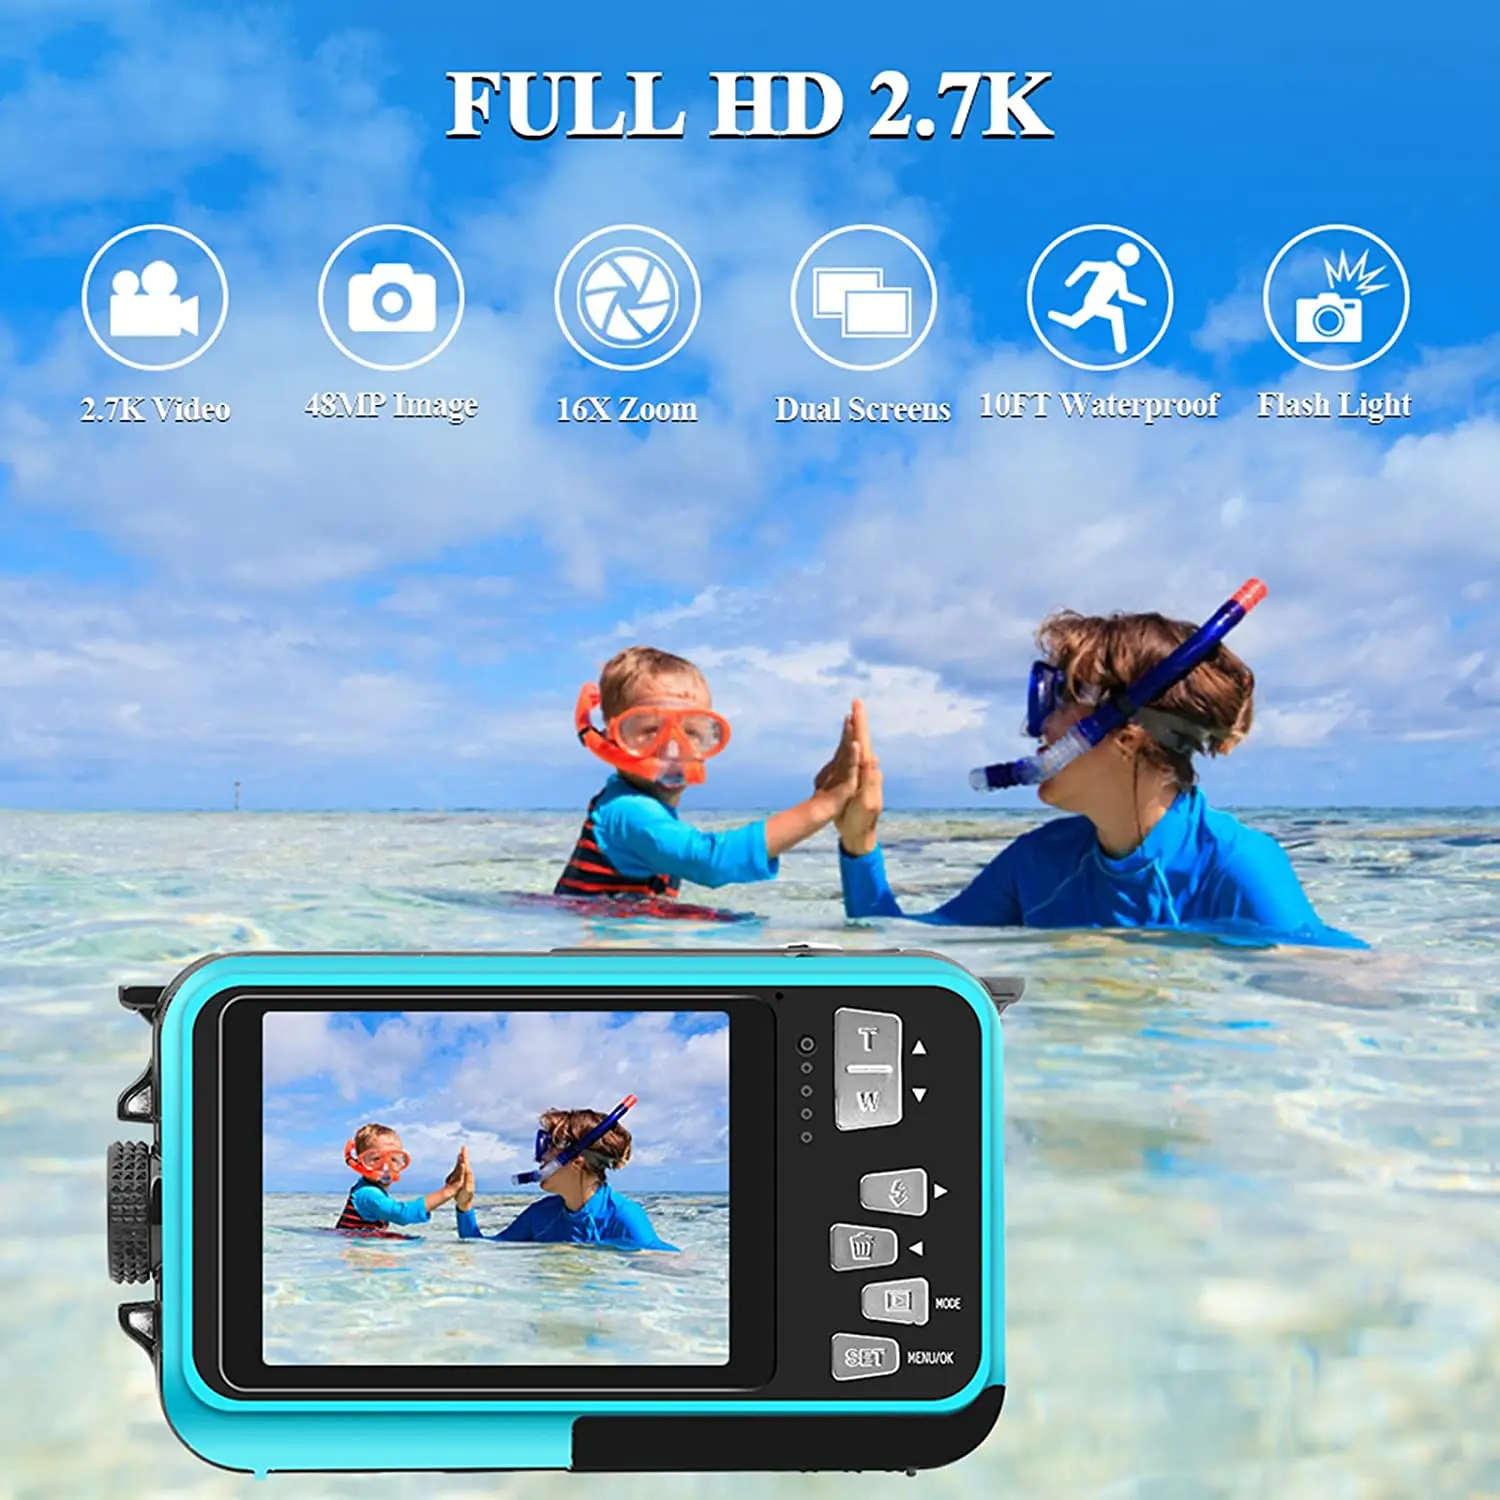 

Водонепроницаемая подводная камера s для подводного плавания Full HD 2,7 K 48MP видеокамера для селфи с двойным экраном 10FT 16X цифровой зум